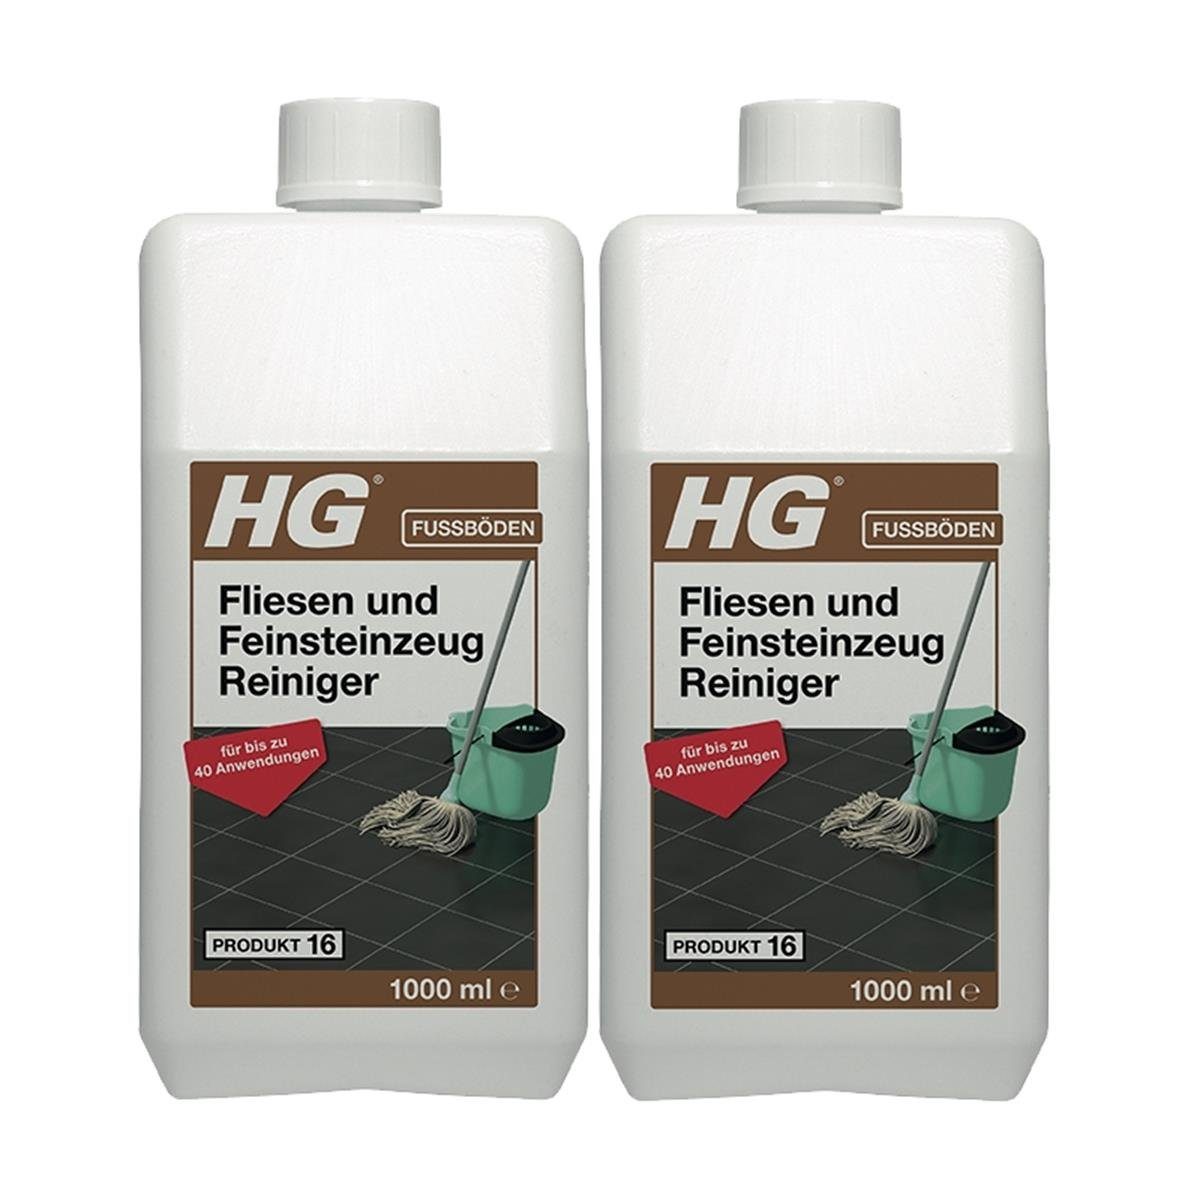 HG HG Fliesen und Feinsteinzeug Reiniger 1L (Produkt 16) (2er Pack) Fussbodenreiniger